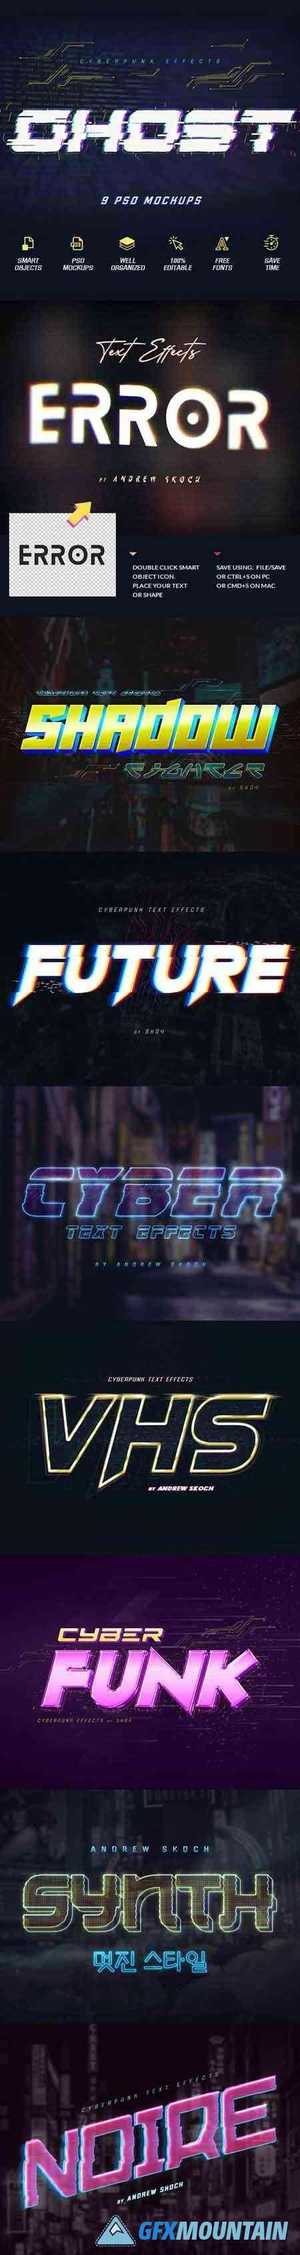 Cyberpunk Text Effects vol 2 25668840